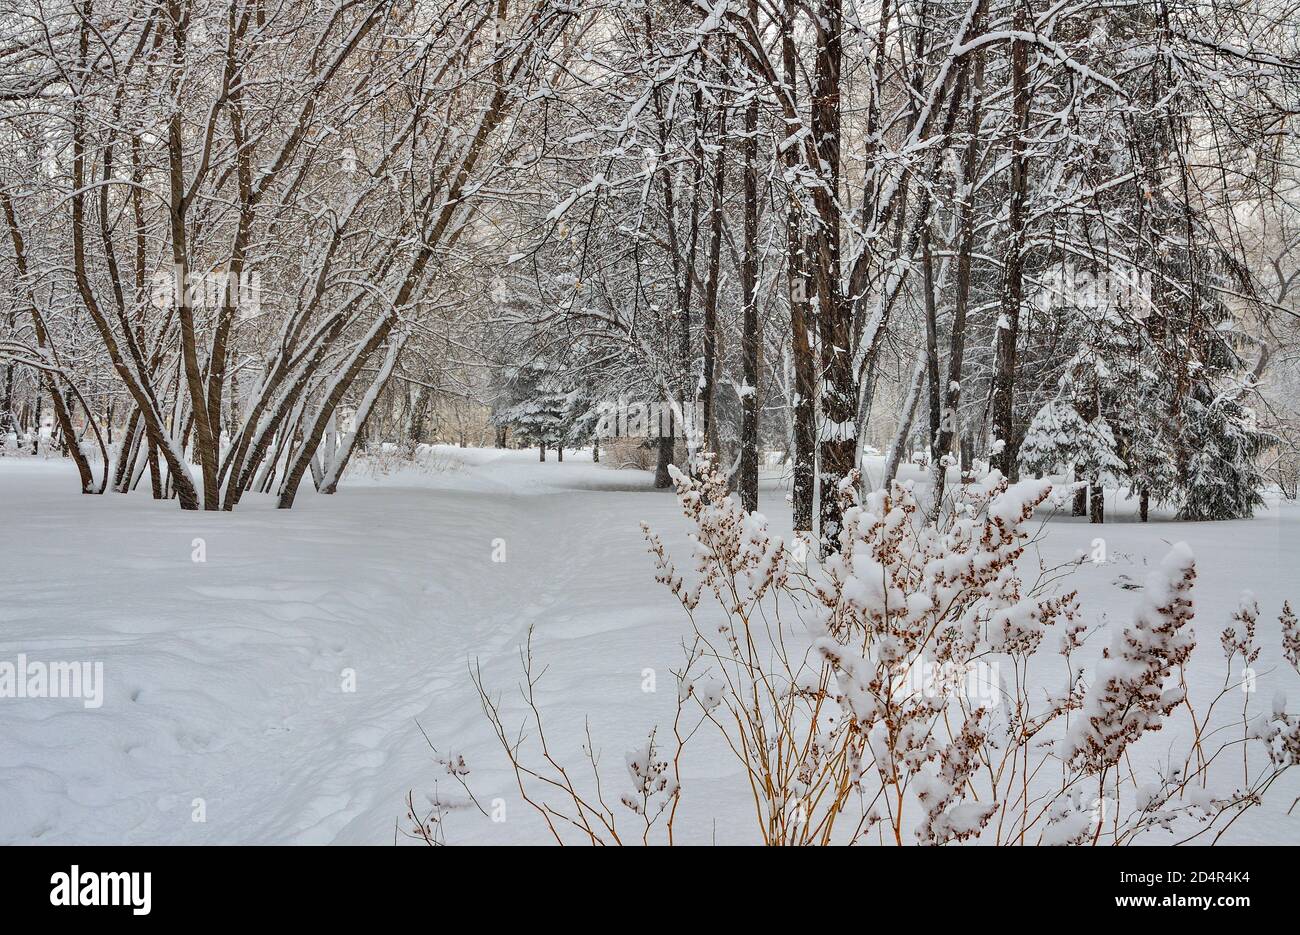 Schönheit der Winterlandschaft im verschneiten Stadtpark. Wunderland mit weißem Schnee und Reif bedeckten Bäumen und Sträuchern - schönes Wintermärchen. Trocken gr Stockfoto